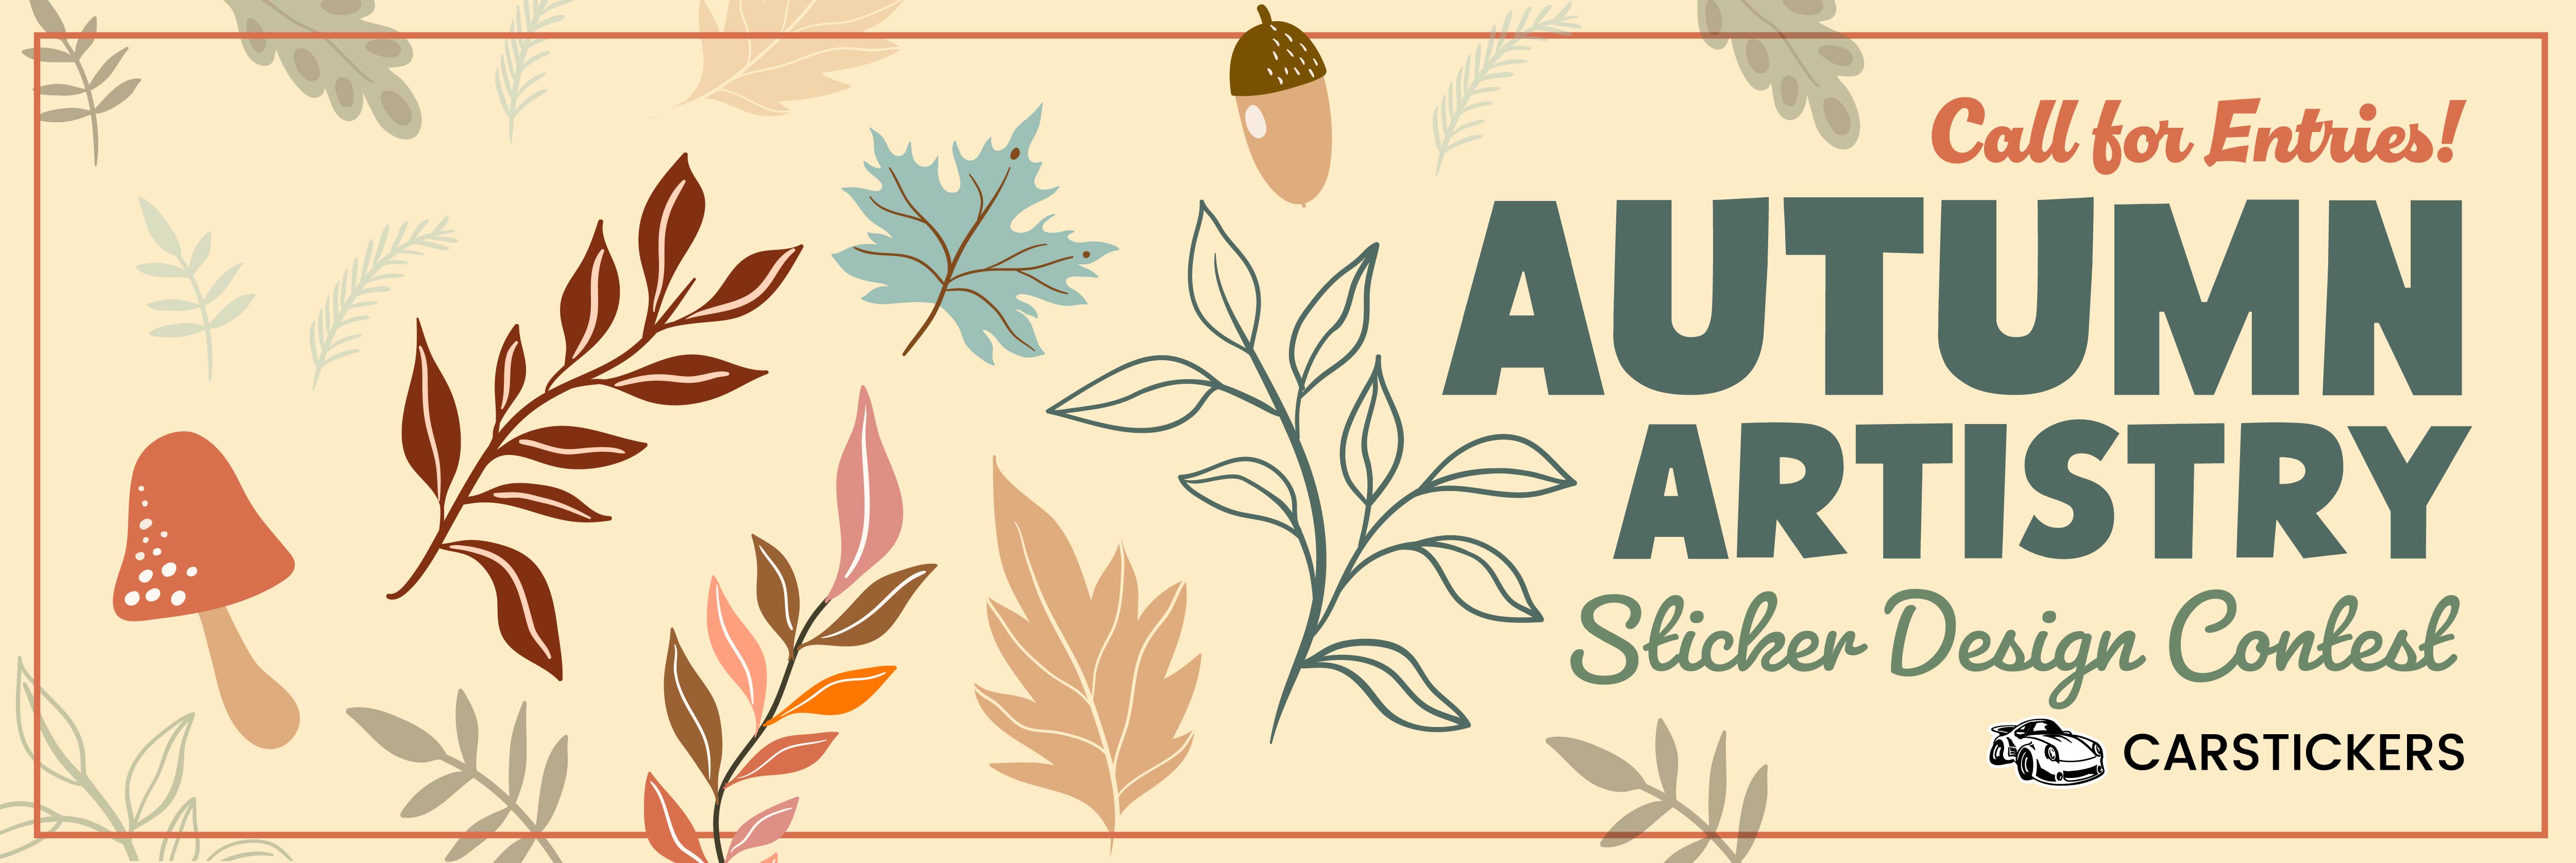 Autumn Artistry Sticker Design Contest